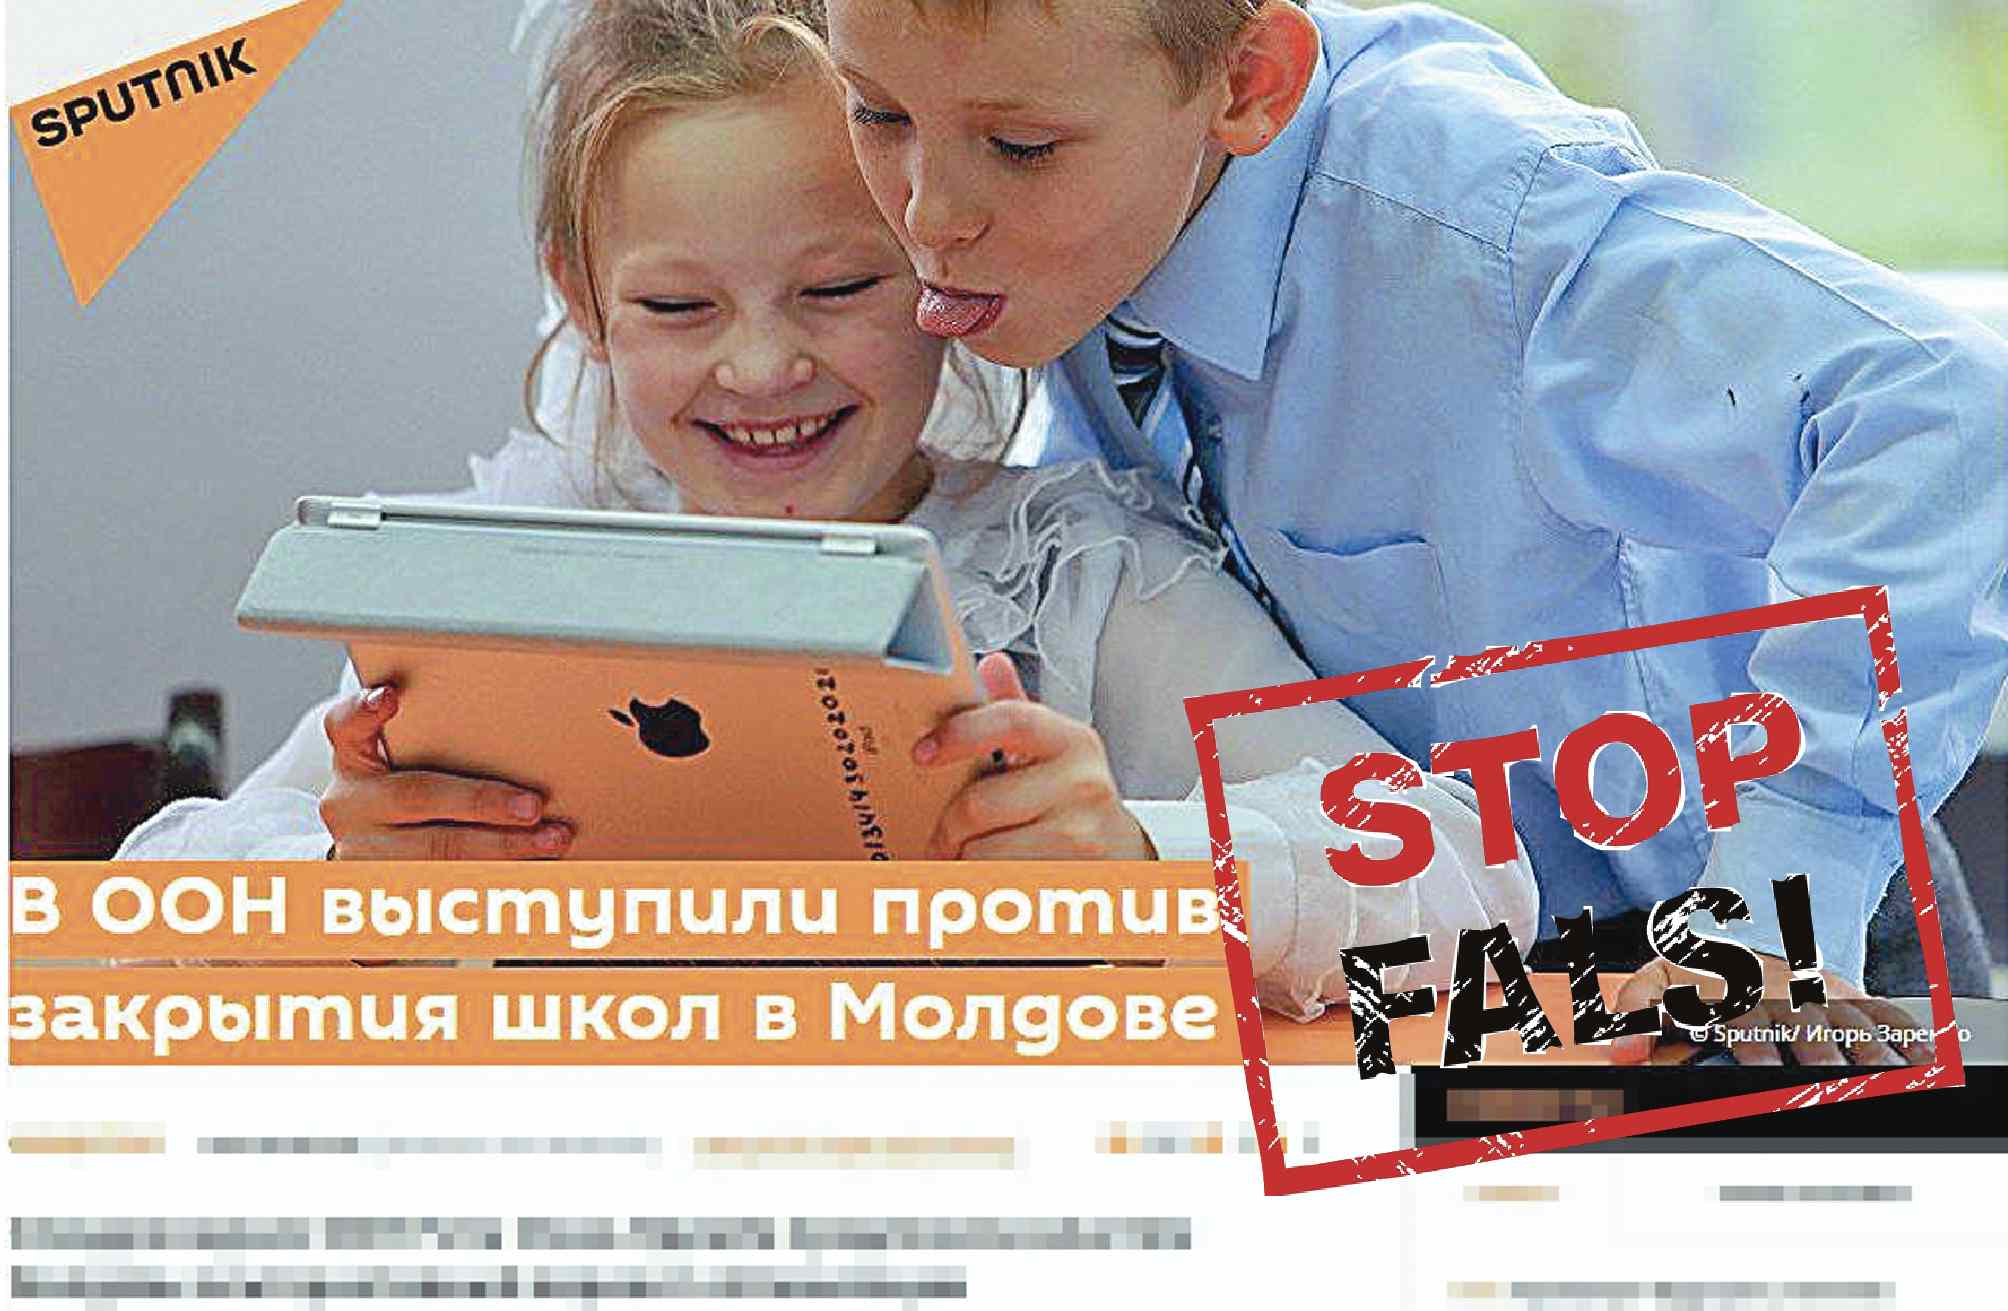 Закрыта школа 29. Закрытие школ Молдова. Мы против закрытия школы. В Молдове закрыли школу. Русские школы в Молдове.